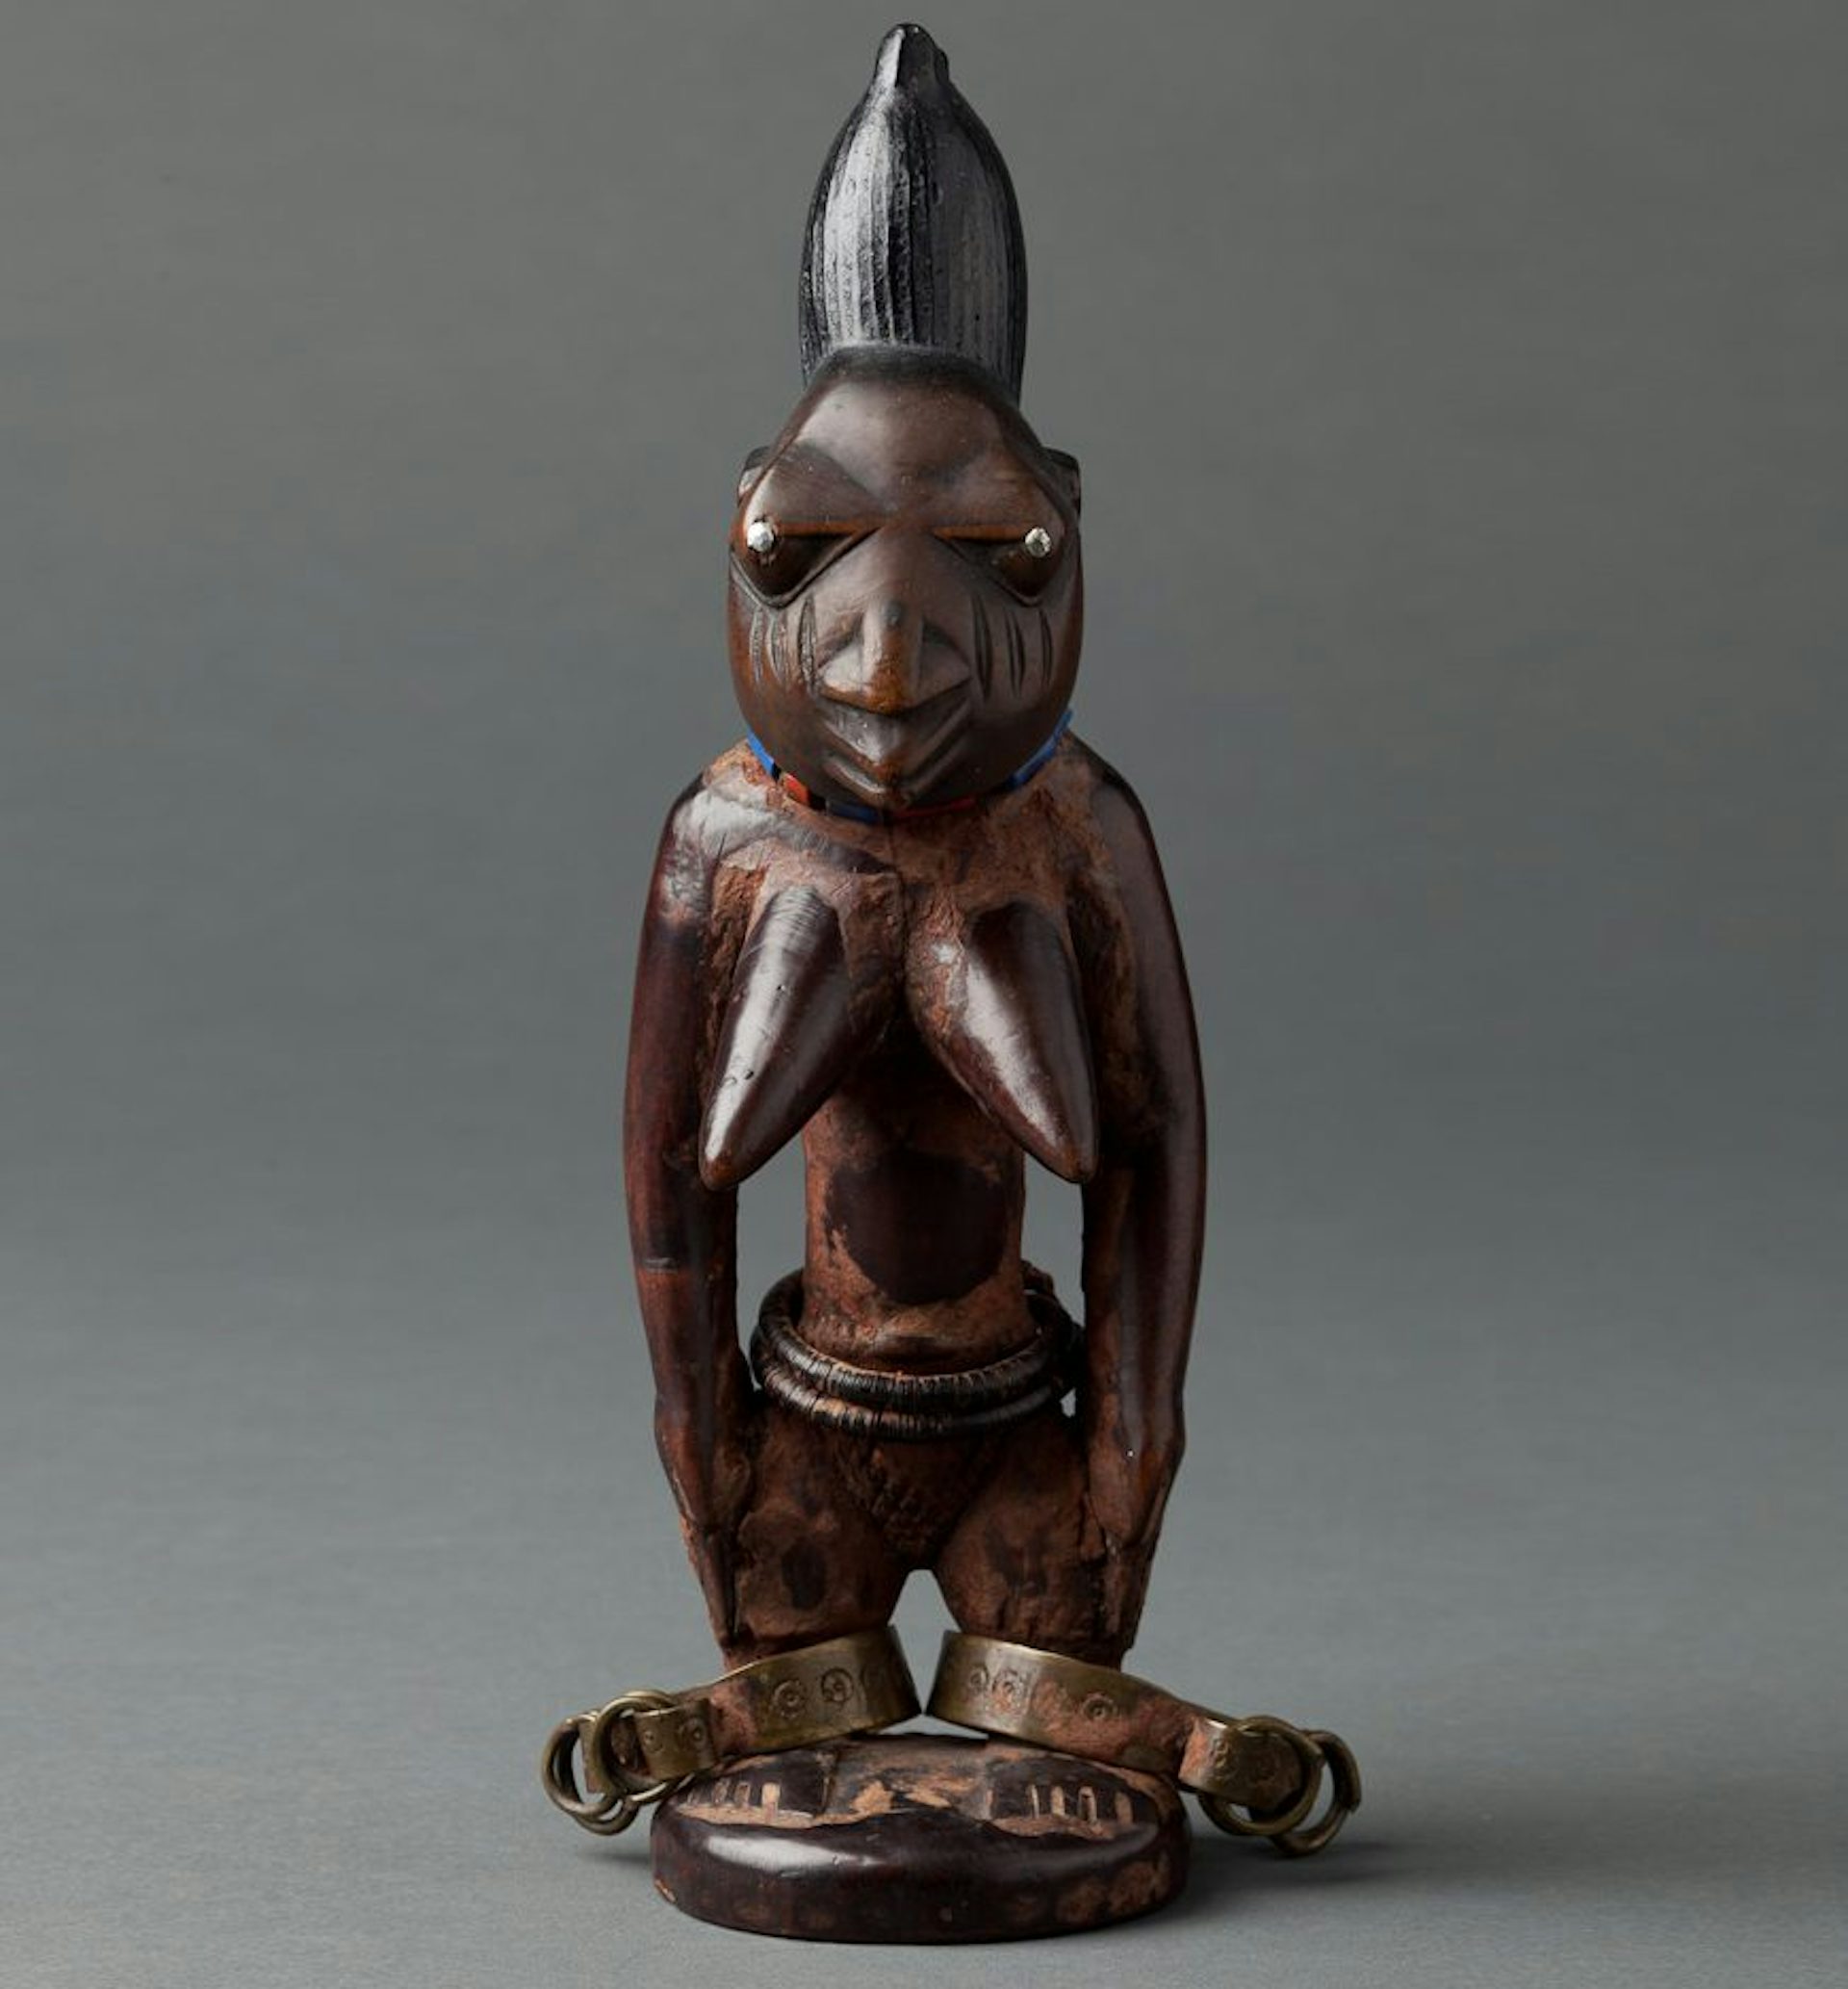 Female Twin Figure (Ibeji) by Yoruba artist (late 19th to early 20th century).